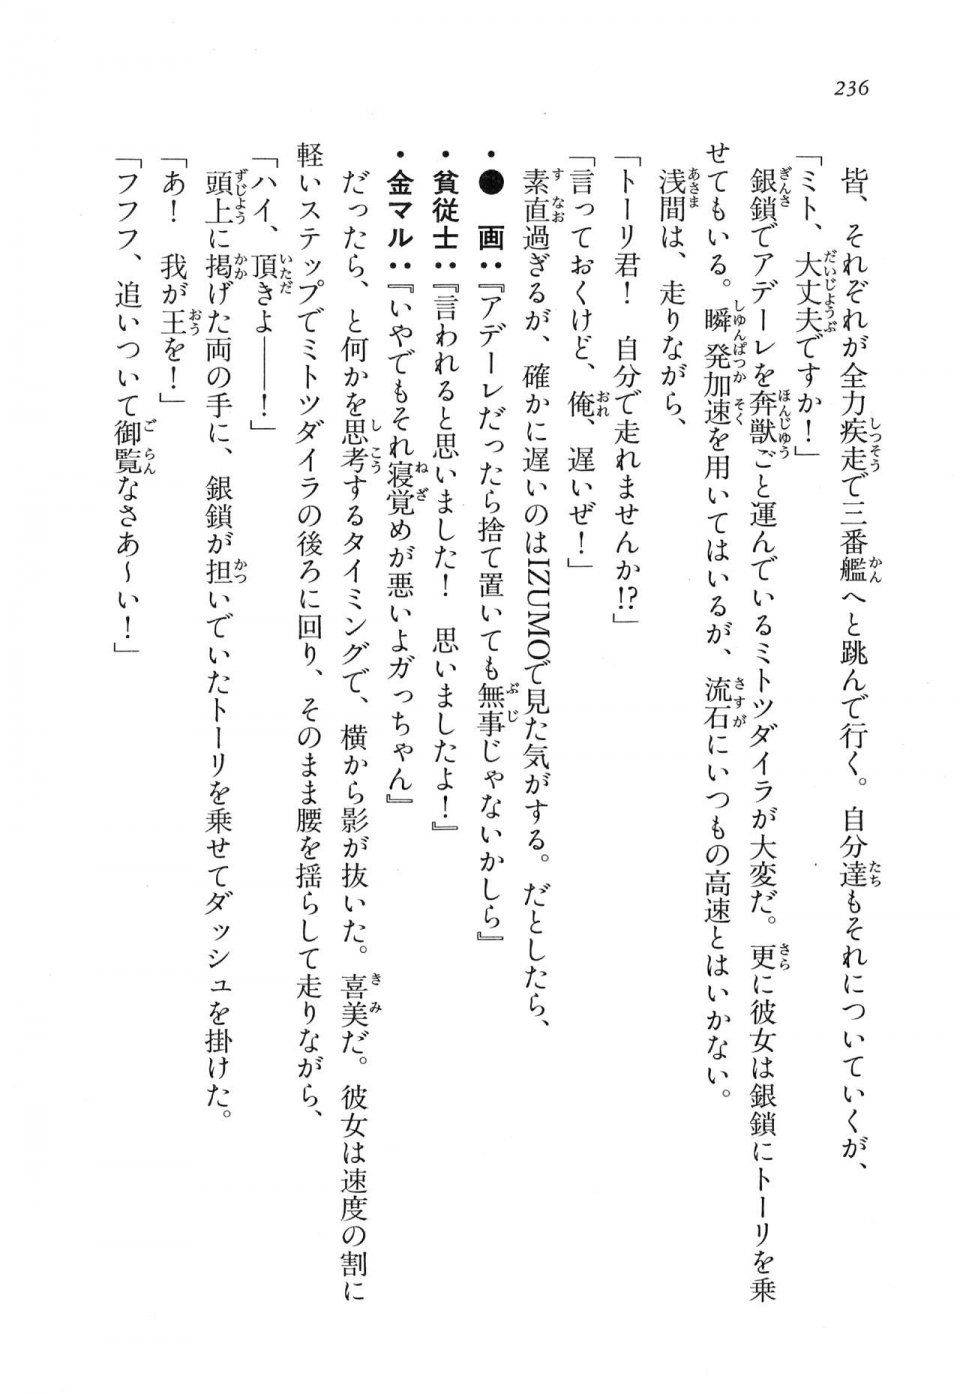 Kyoukai Senjou no Horizon LN Vol 17(7B) - Photo #236